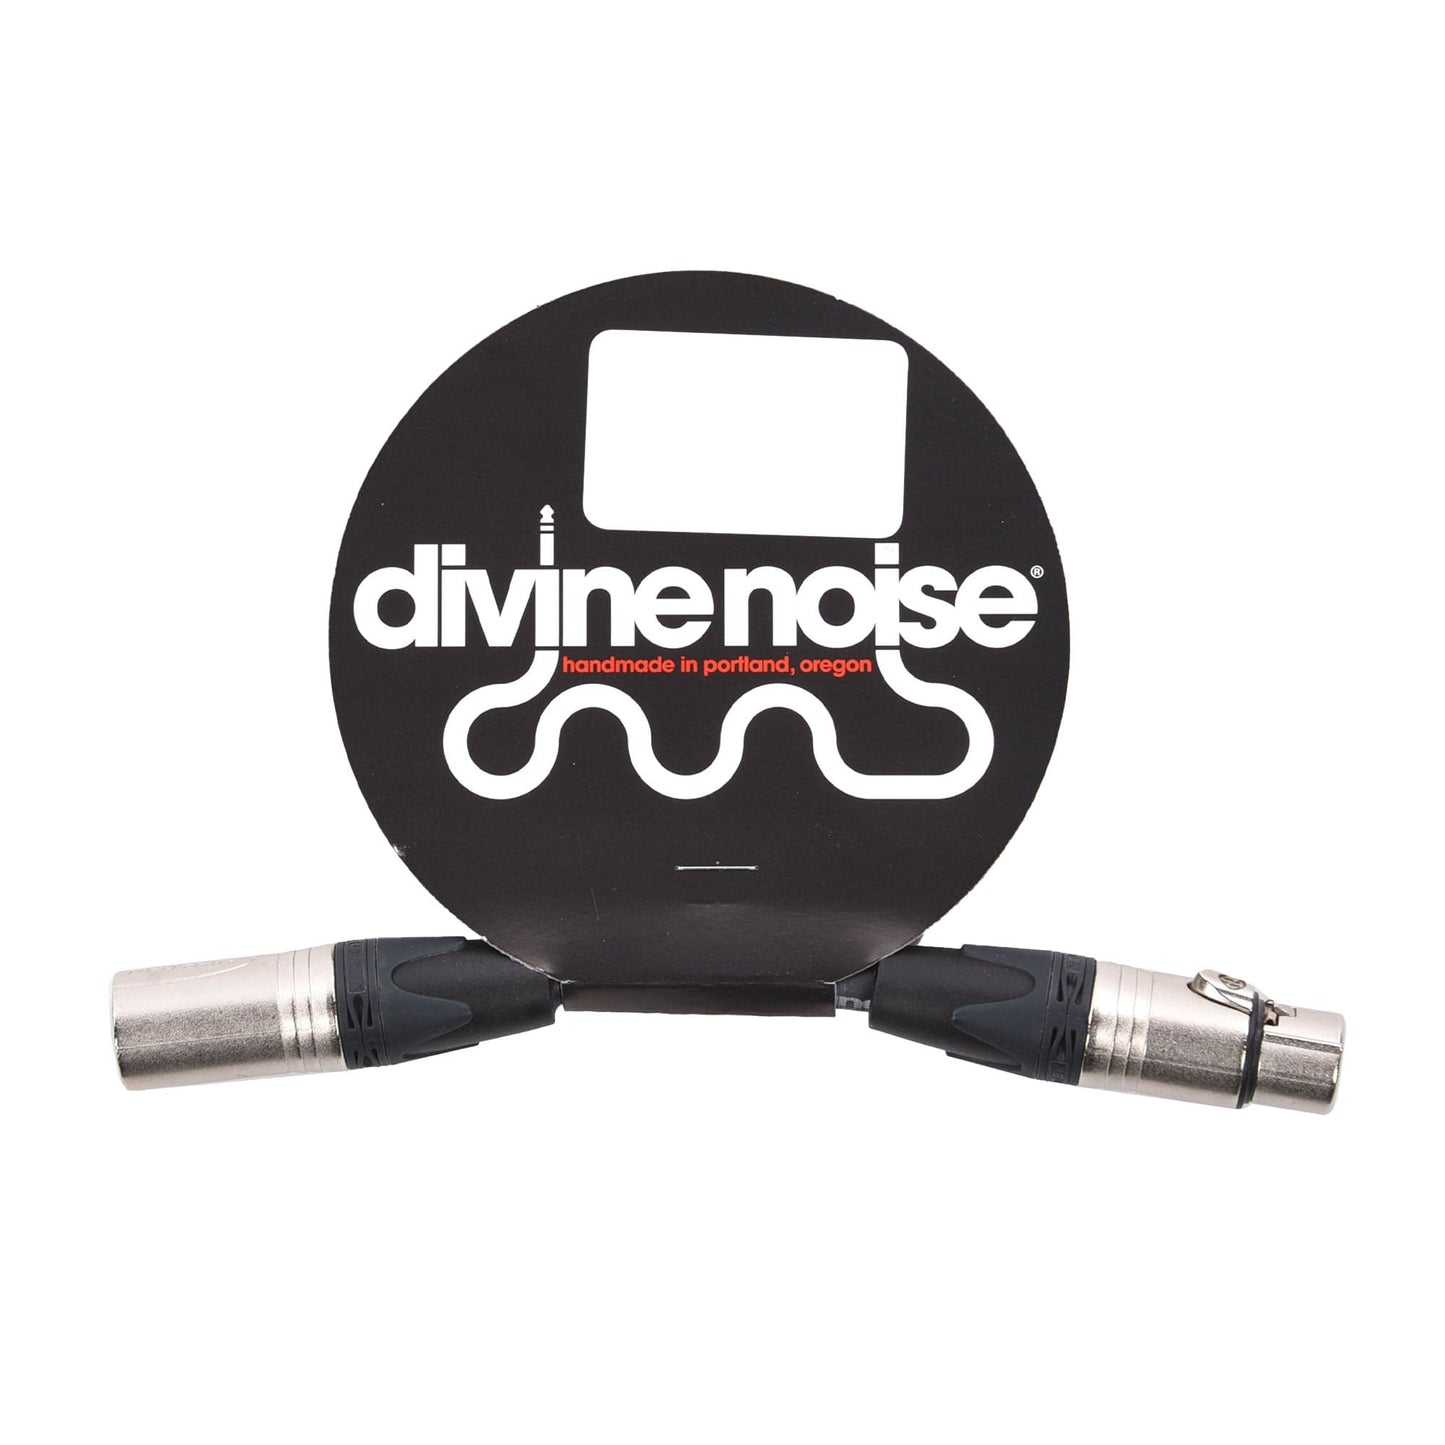 Divine Noise XLR 220 Cable Black 6" Male-Female Accessories / Cables